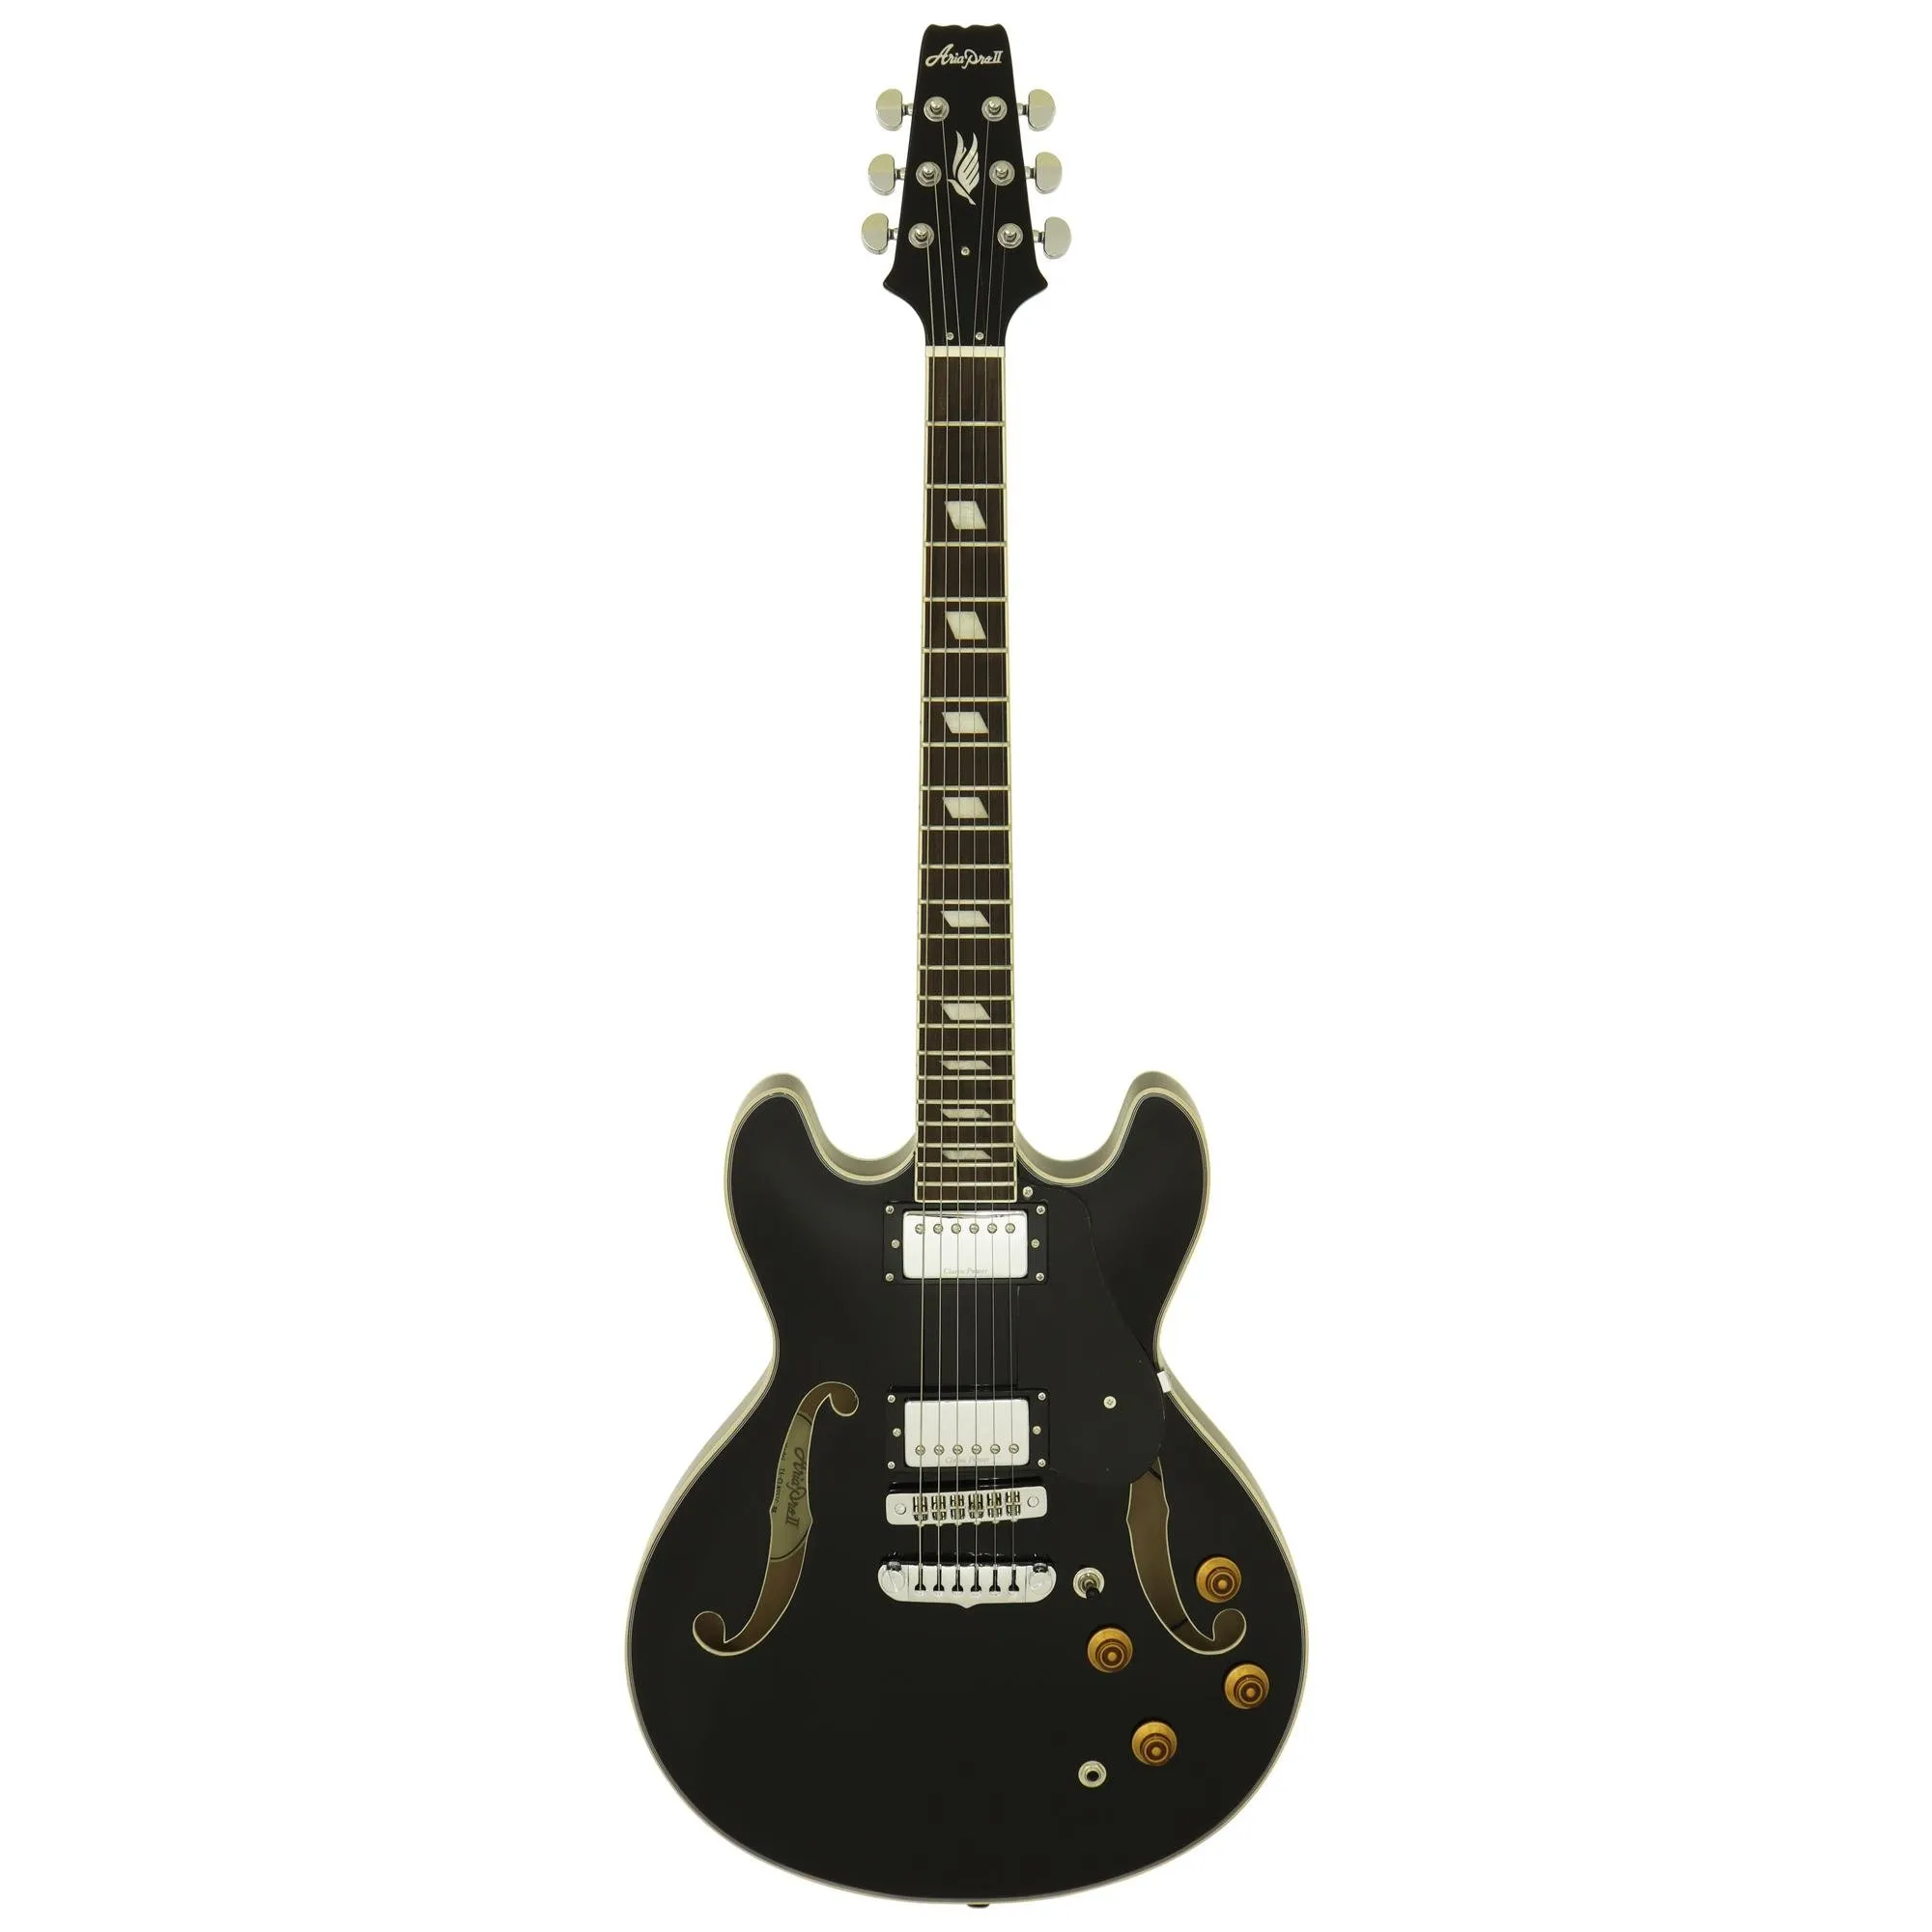 Guitarra Aria Pro II TA-CLASSIC Black por 3.999,99 à vista no boleto/pix ou parcele em até 12x sem juros. Compre na loja Mundomax!